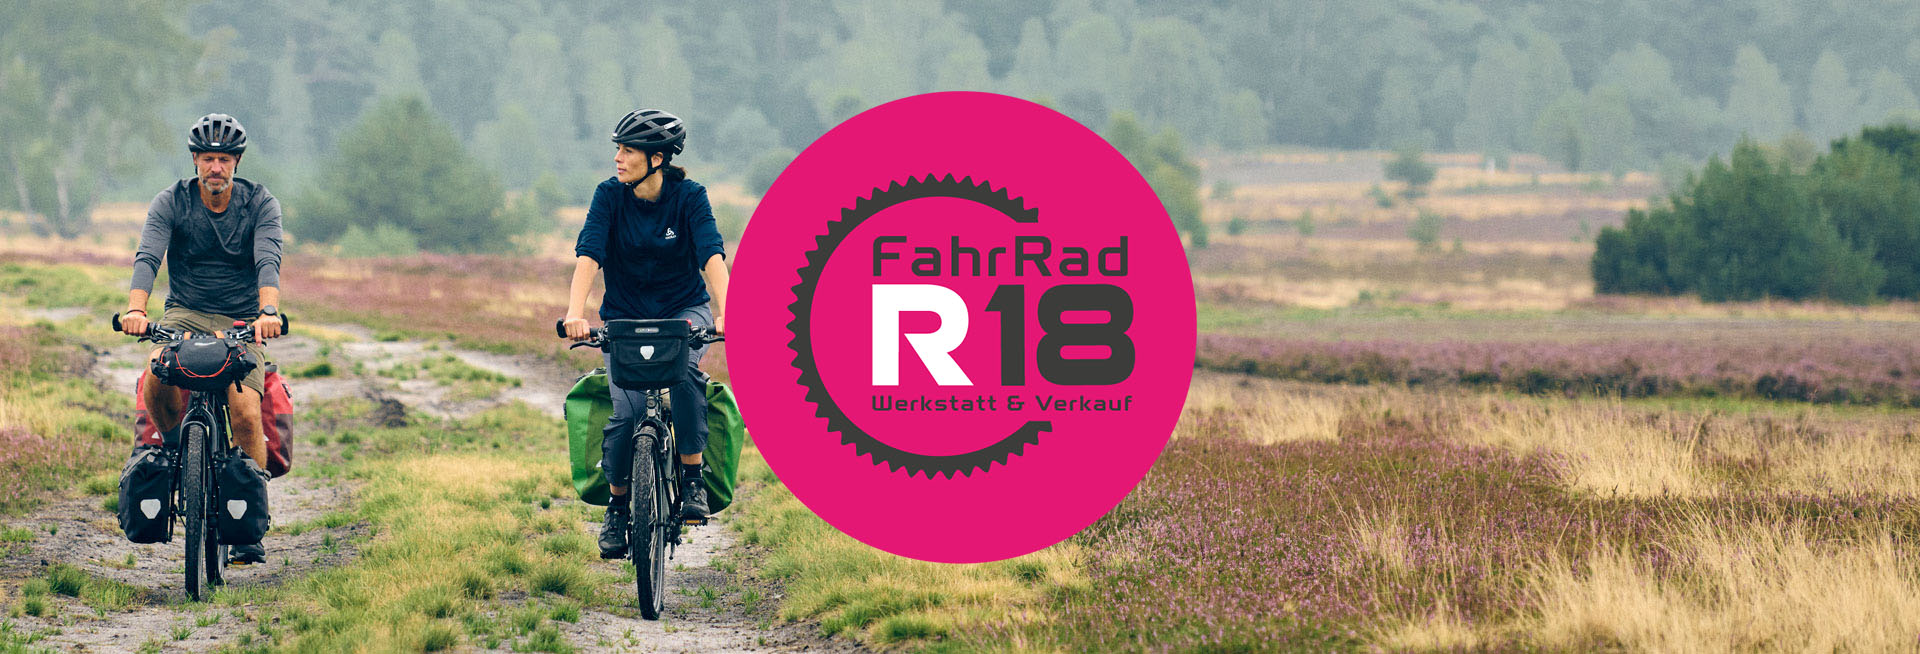 Das Logo des münchner Fahrradladens FahrRad R18 ist zu sehen. Im Hintergrund sieht man zwei Radfahrende auf ihren Bikepacking-Bikes. Das Logo ist ein graues Kettenblatt mit der Aufschrift "FahrRad R18 - Werkstatt und Verkauf", vor einem pinken Kreis.